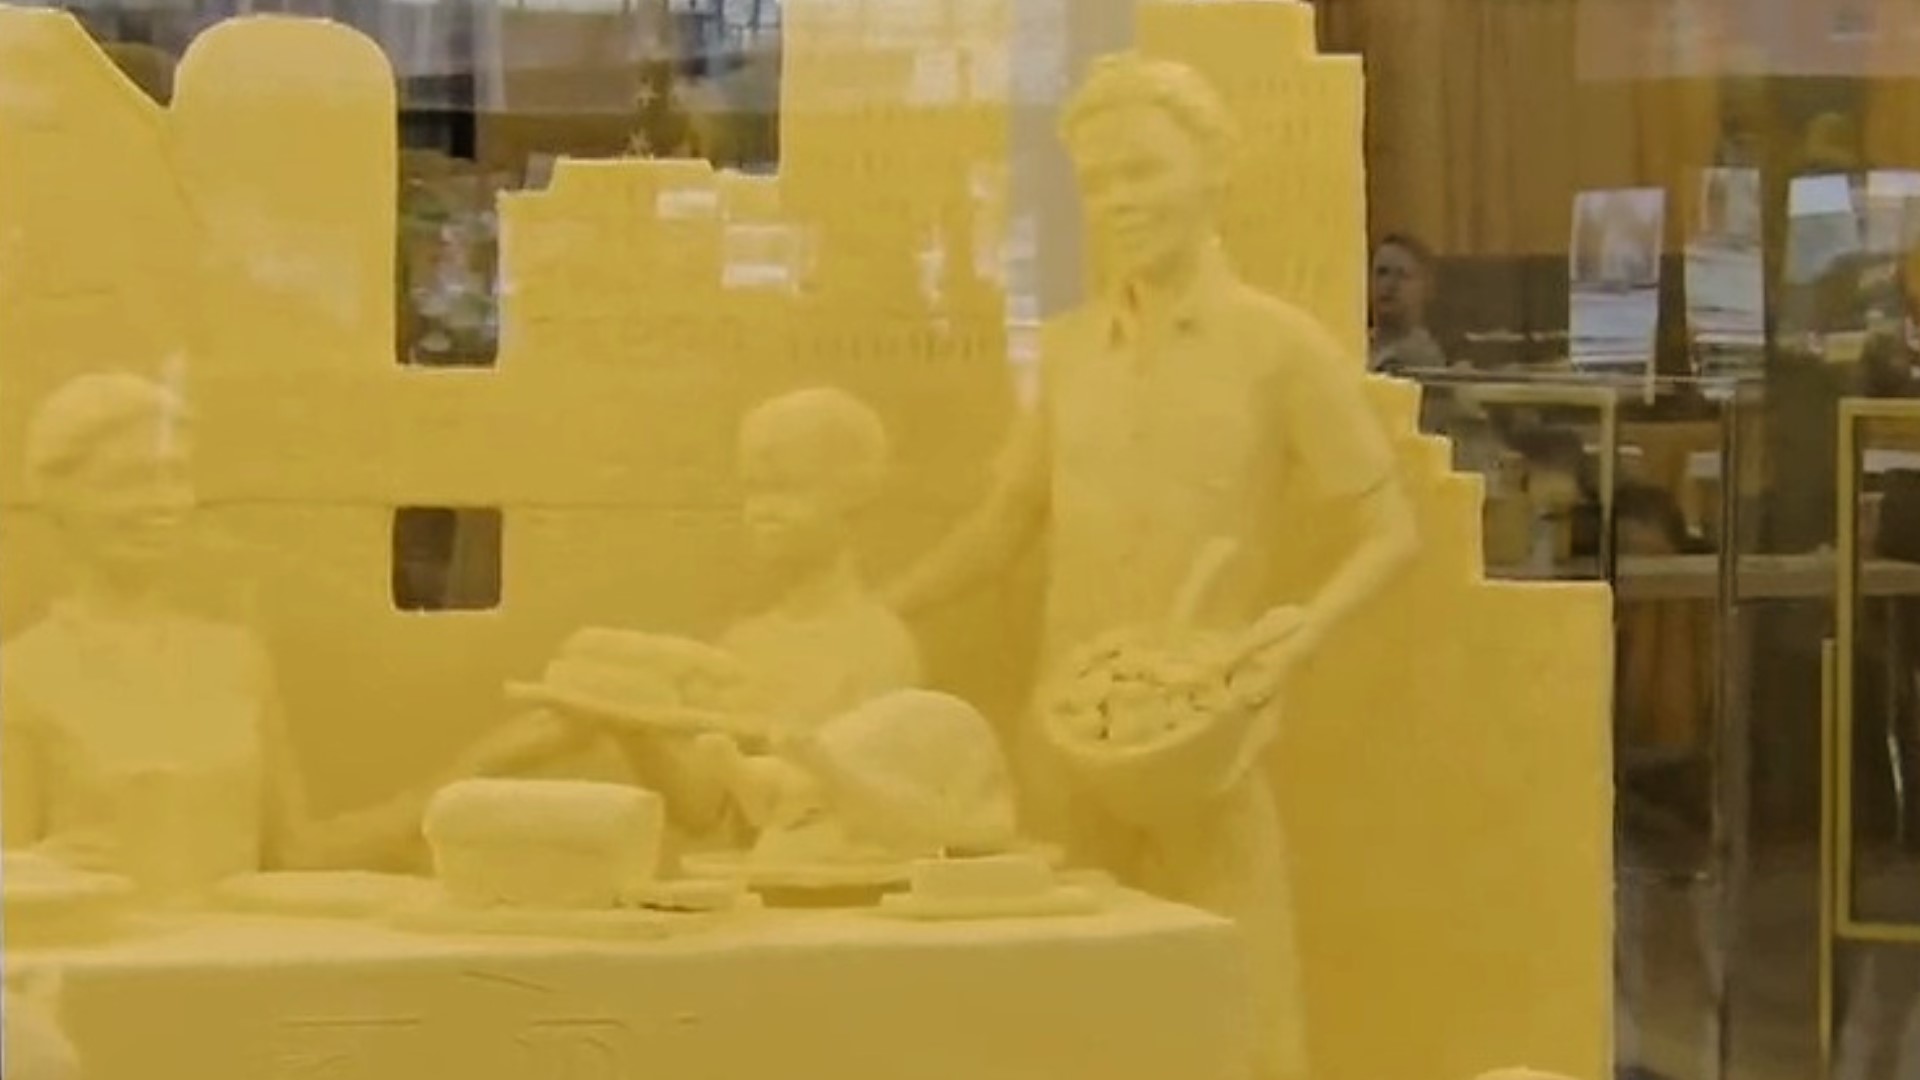 Harrisburg PA Farm Show butter sculpture